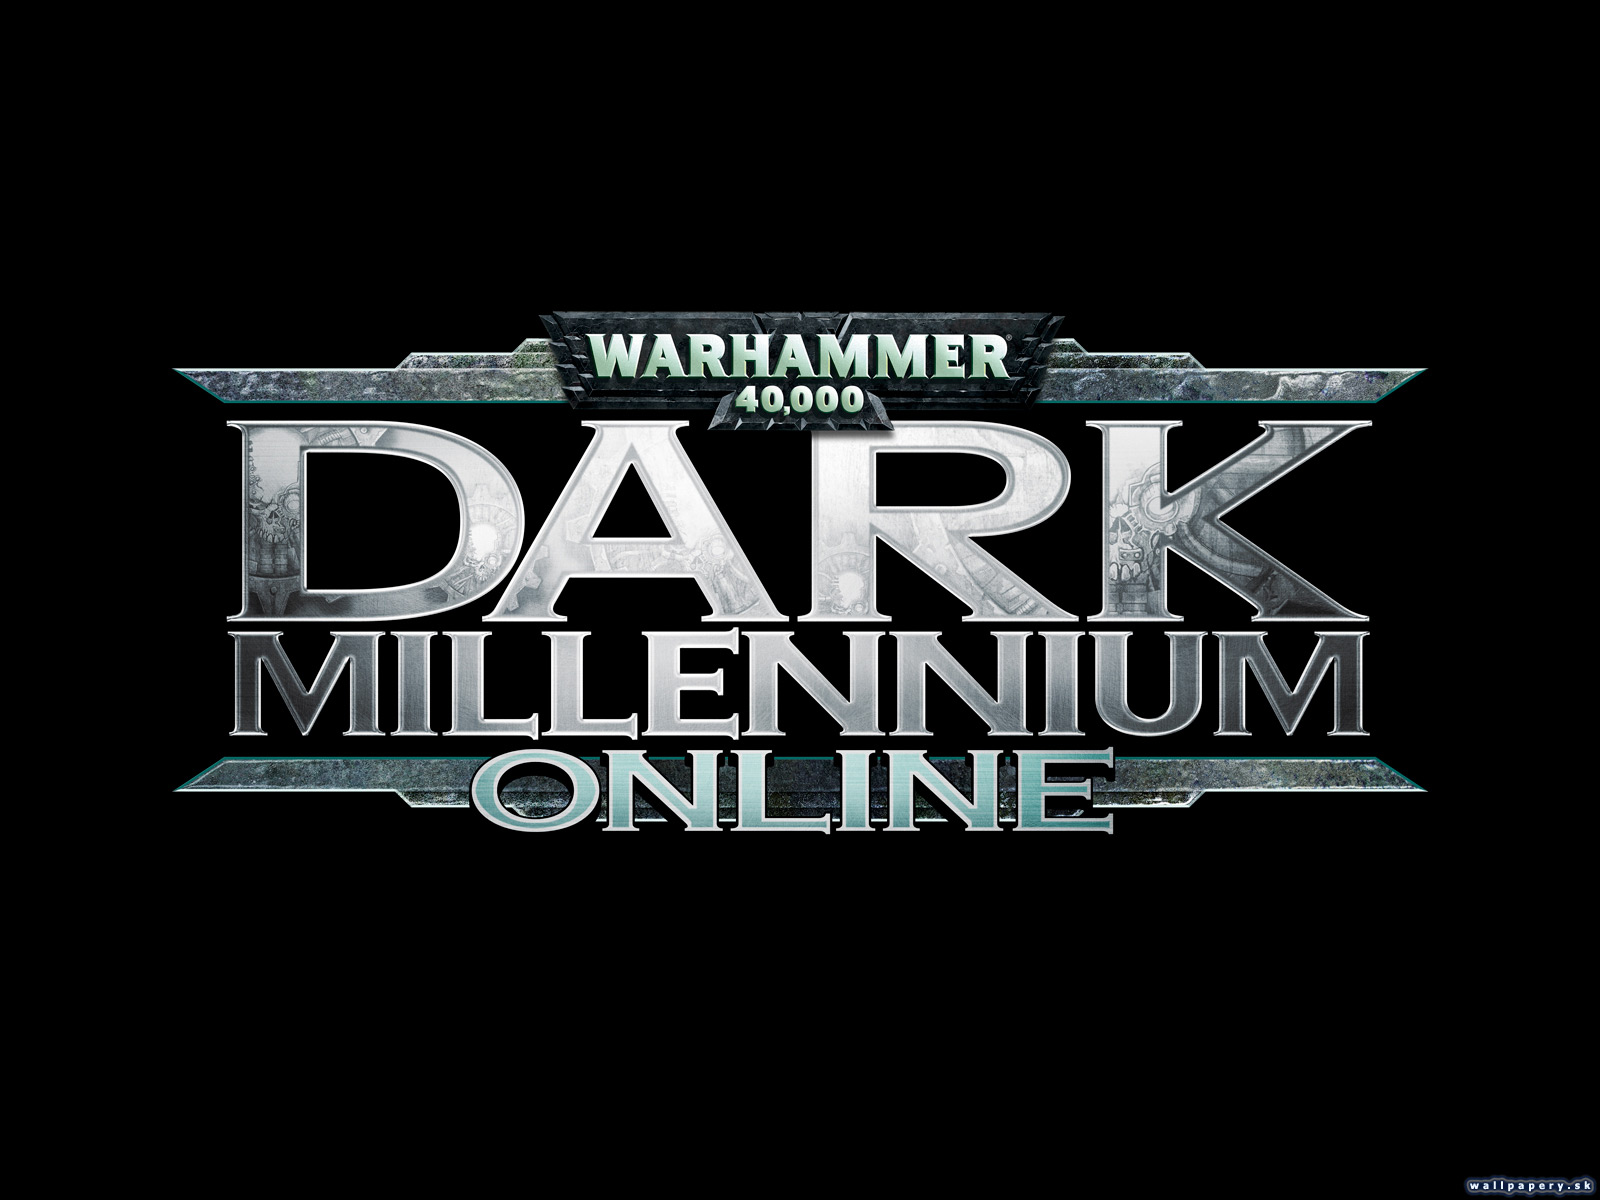 Warhammer 40,000: Dark Millennium Online - wallpaper 2